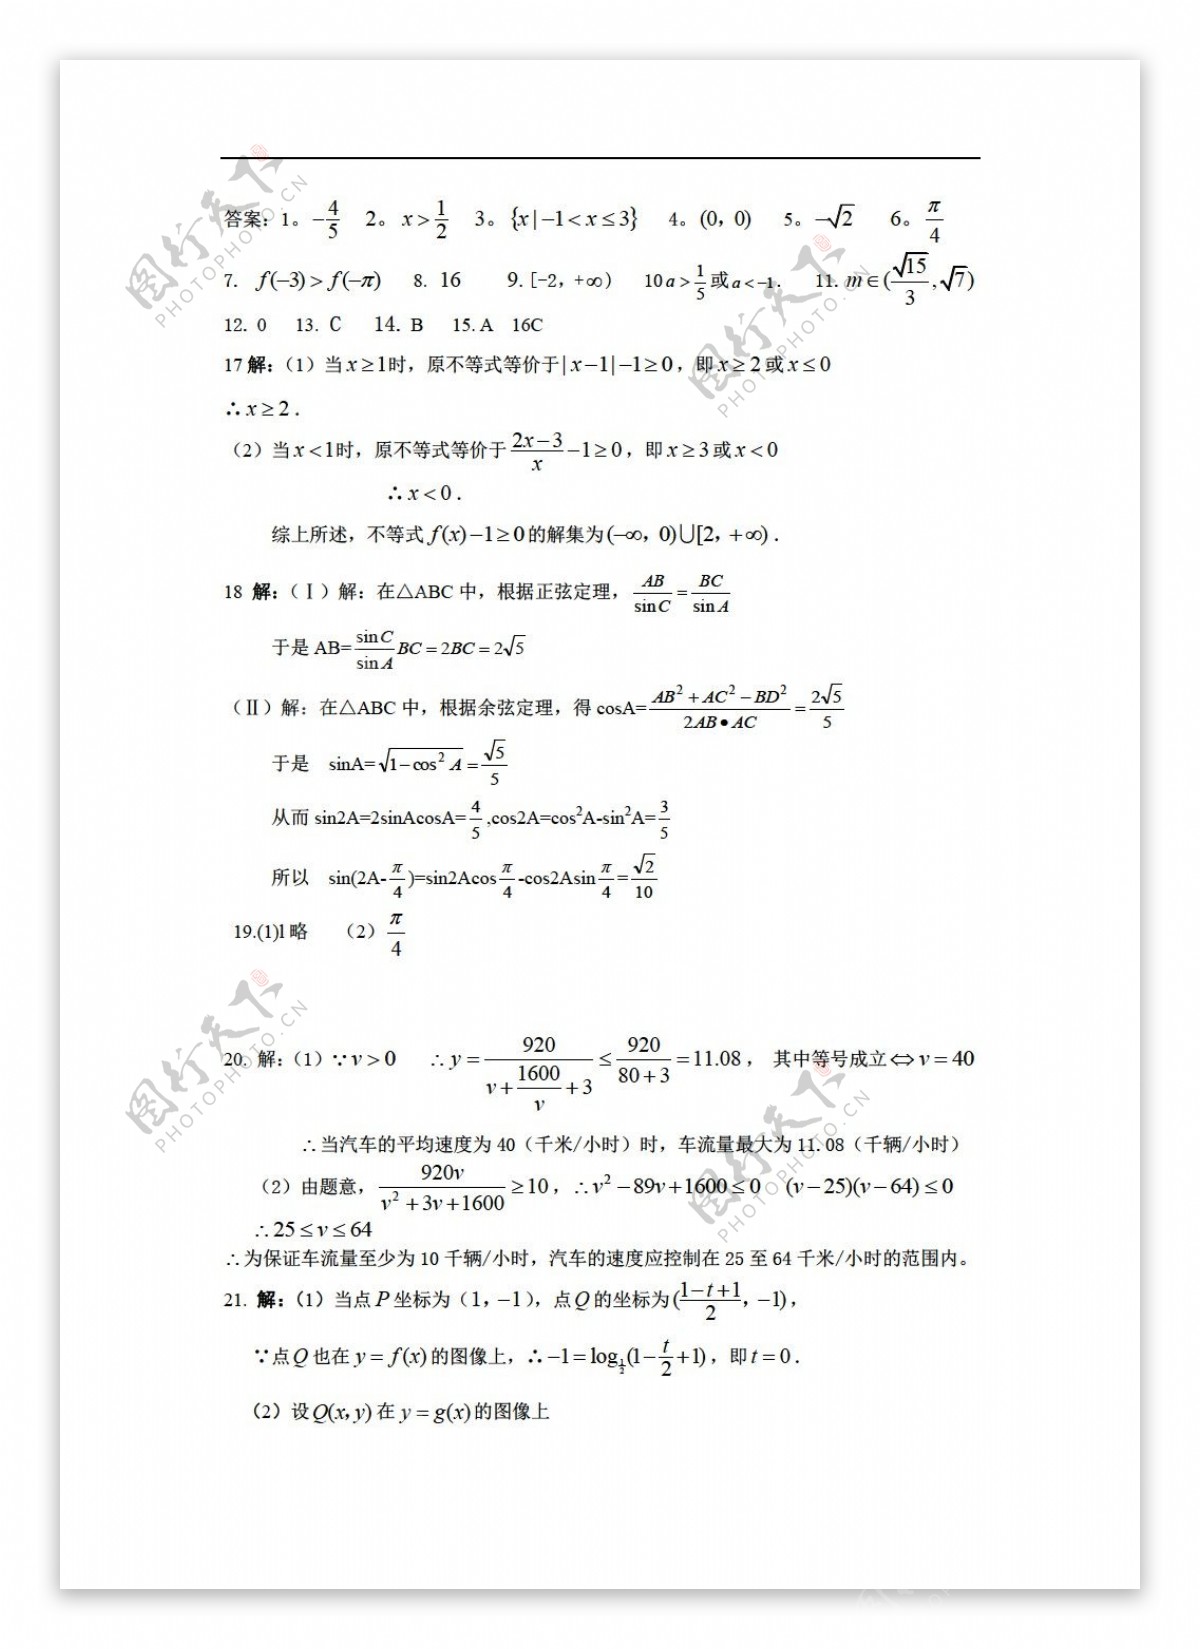 数学人教版上海大团中学二OO九学年度第一学期摸底考试试卷